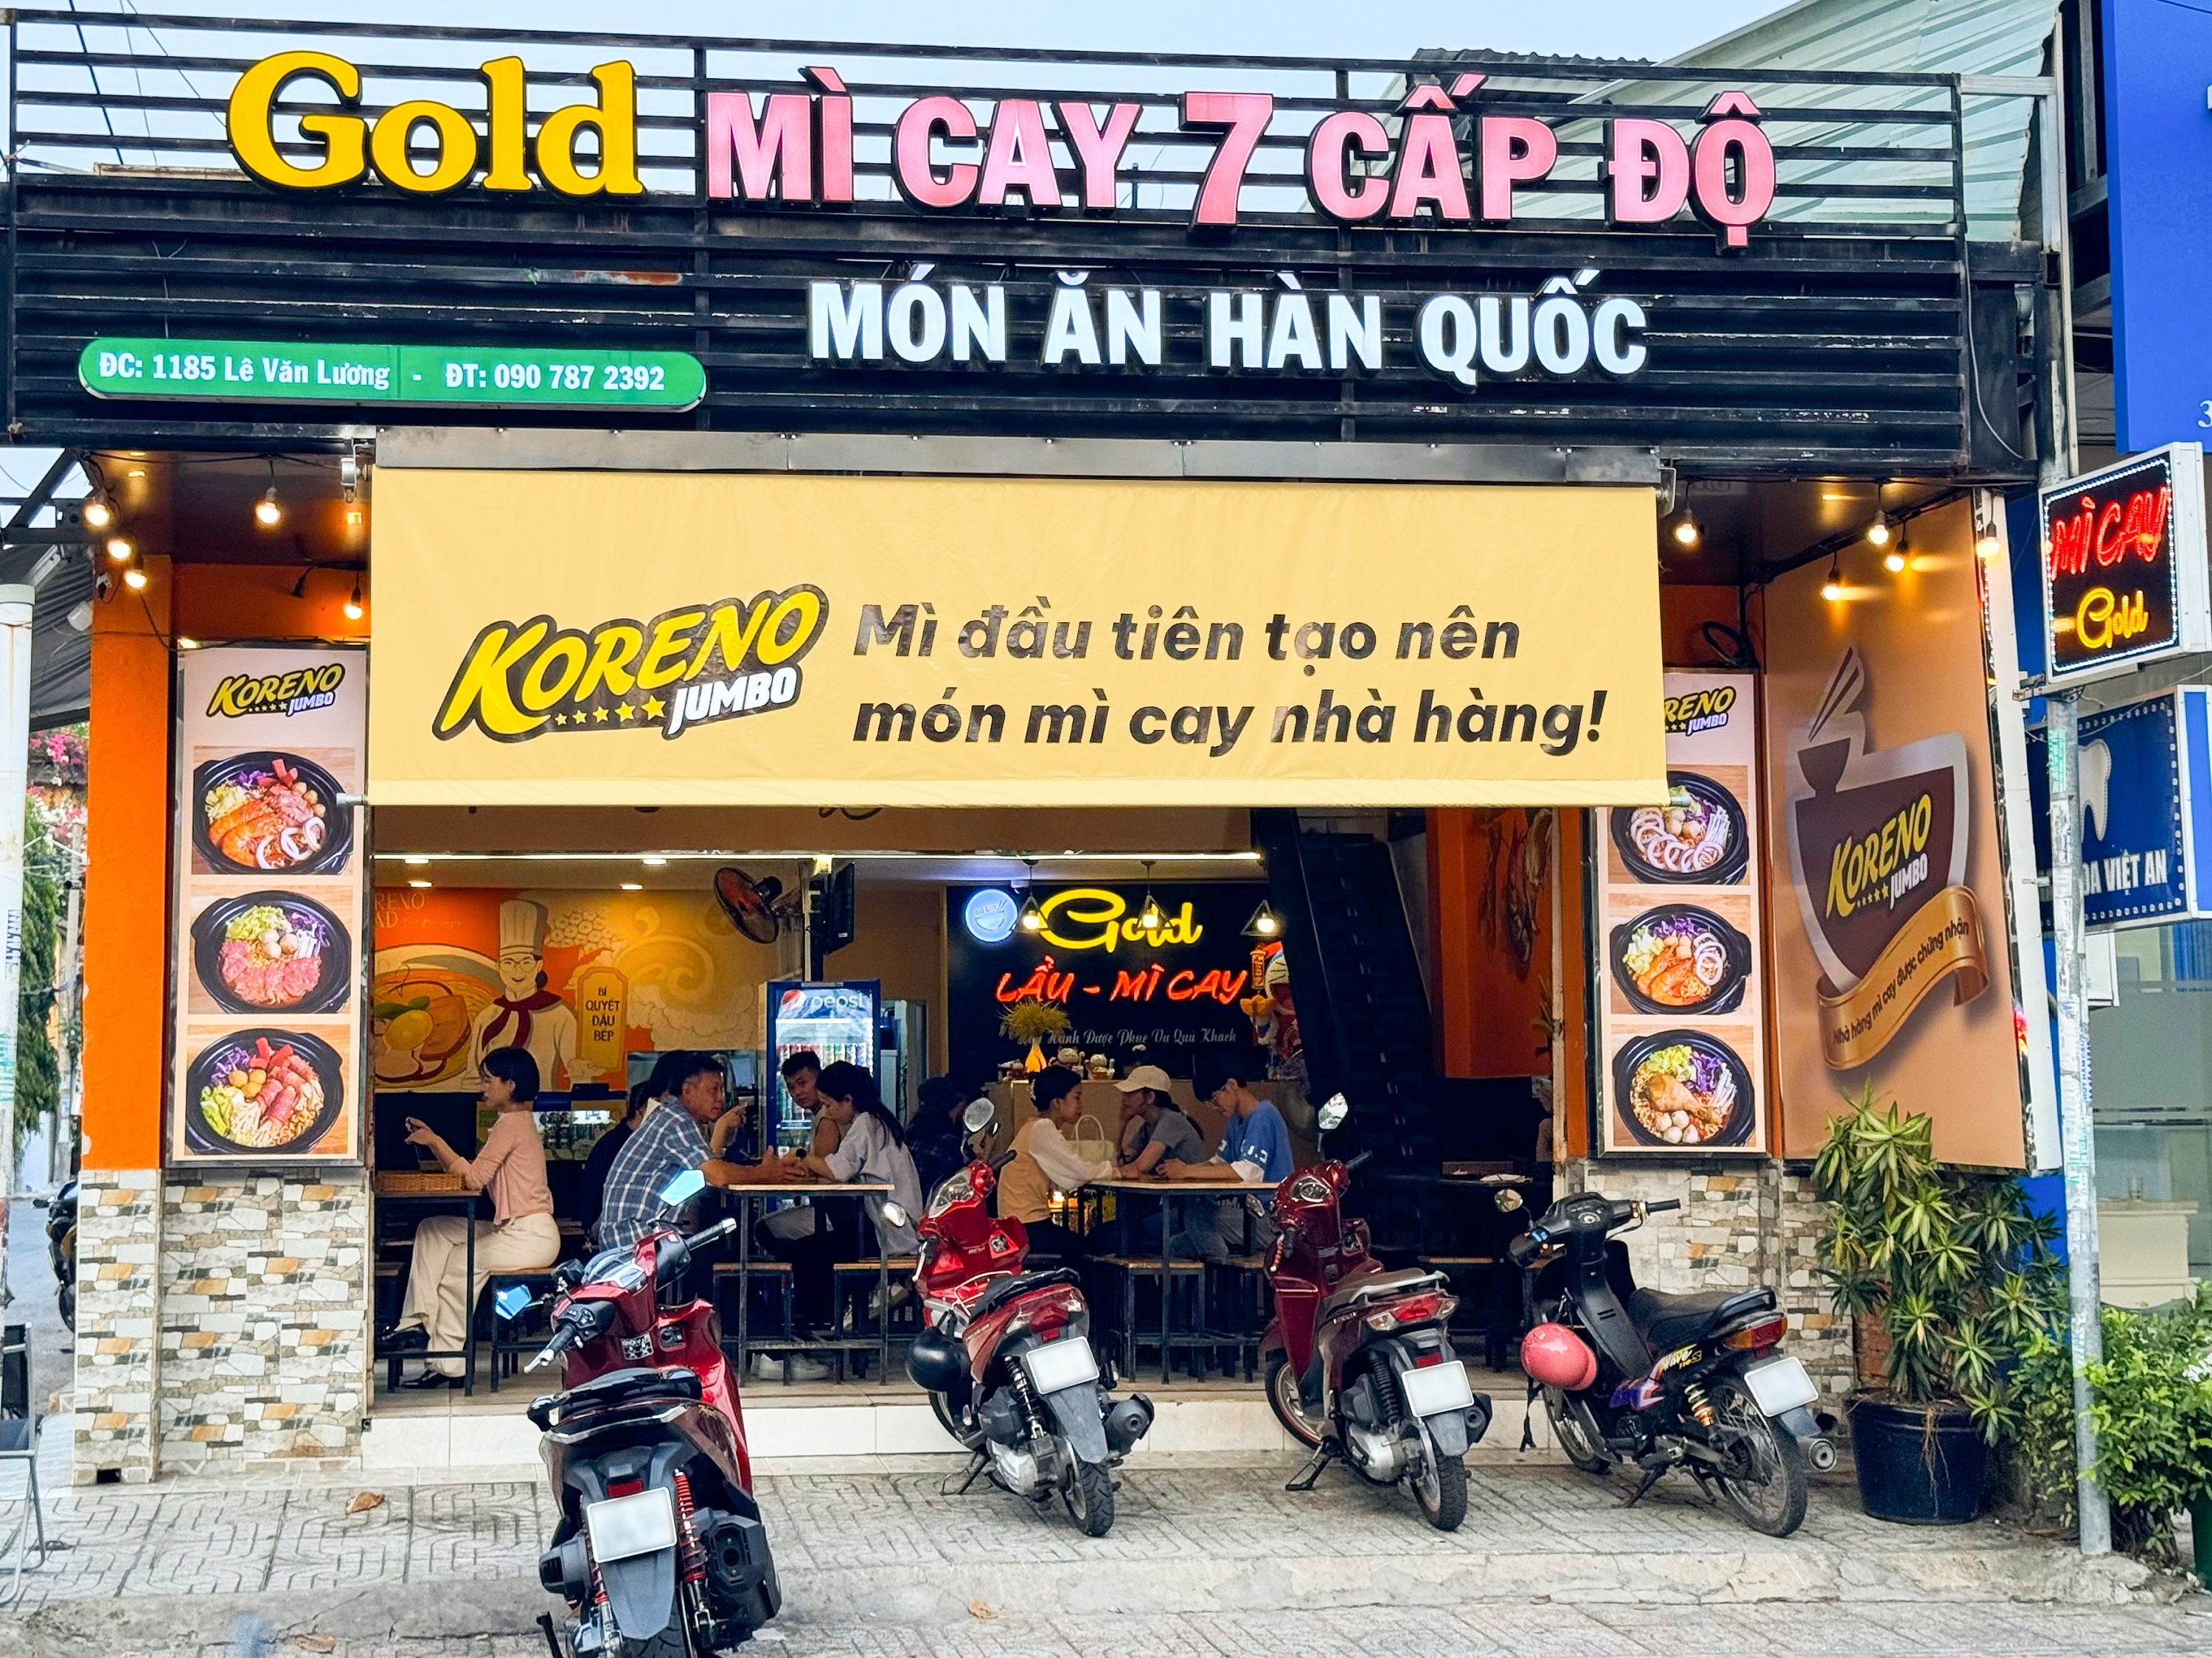 ‘Koreno Road - Tọa độ mì ngon’ chinh phục thực khách Việt - ảnh 3